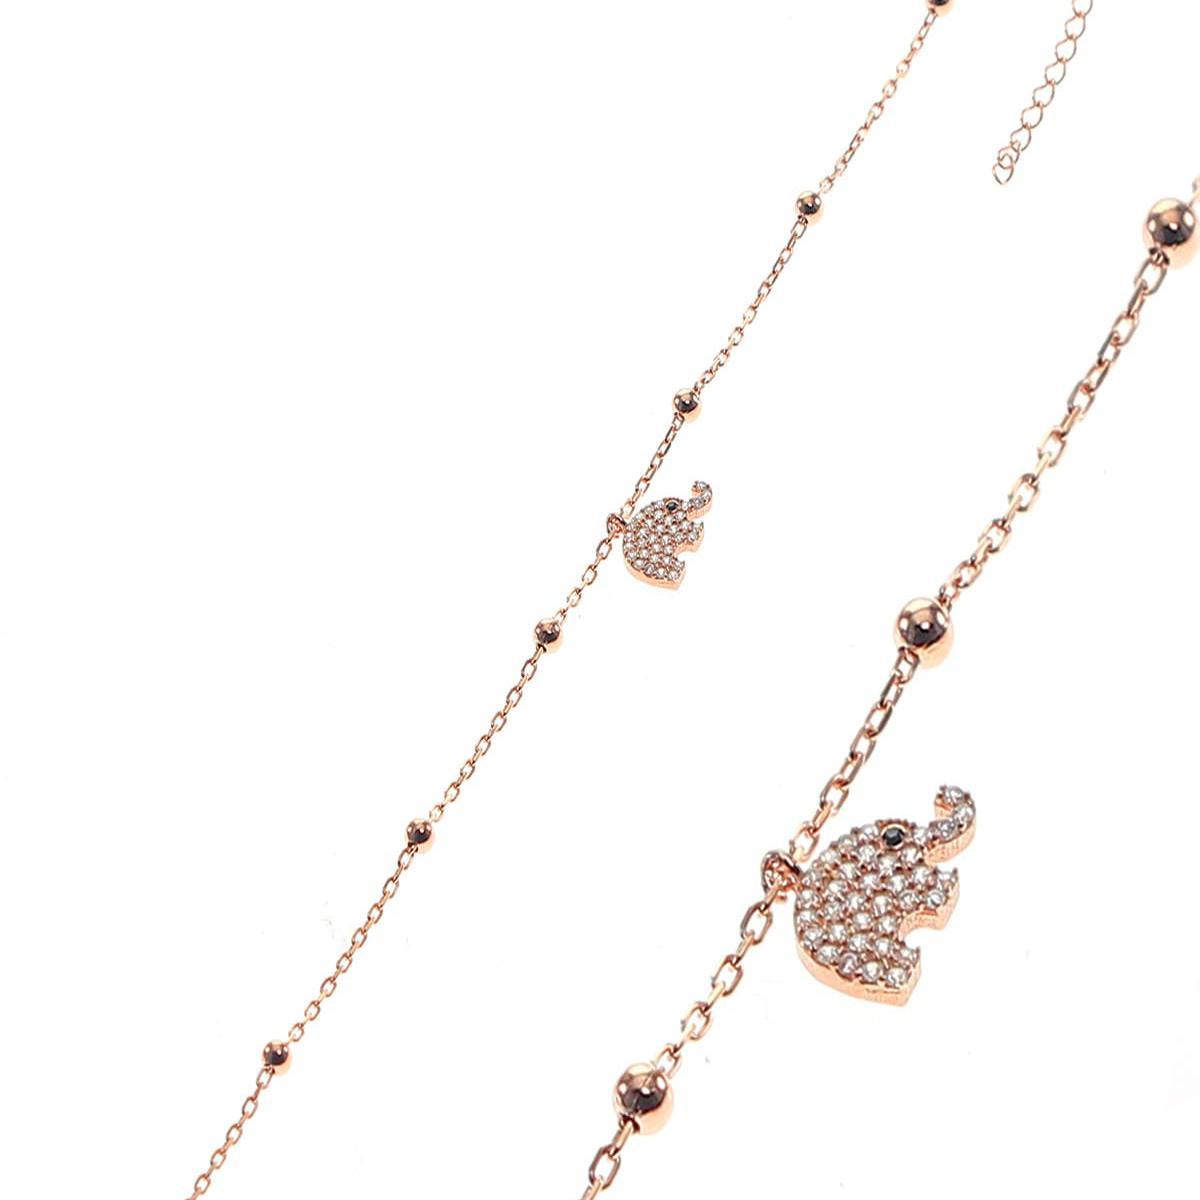 Elephant Bracelet Gold • Elephant Charm Bracelet • Gift For Wife - Trending Silver Gifts